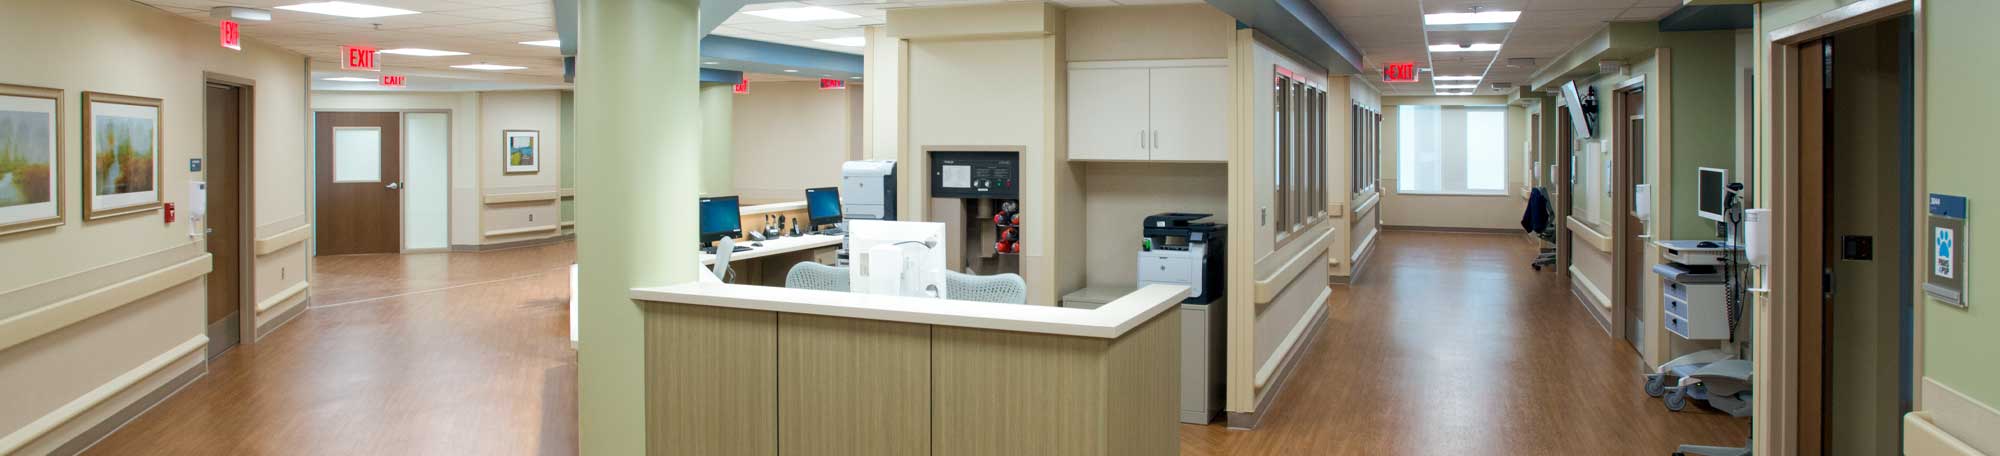 Hamilton Intensive Care Units3 Hamilton Health Care System